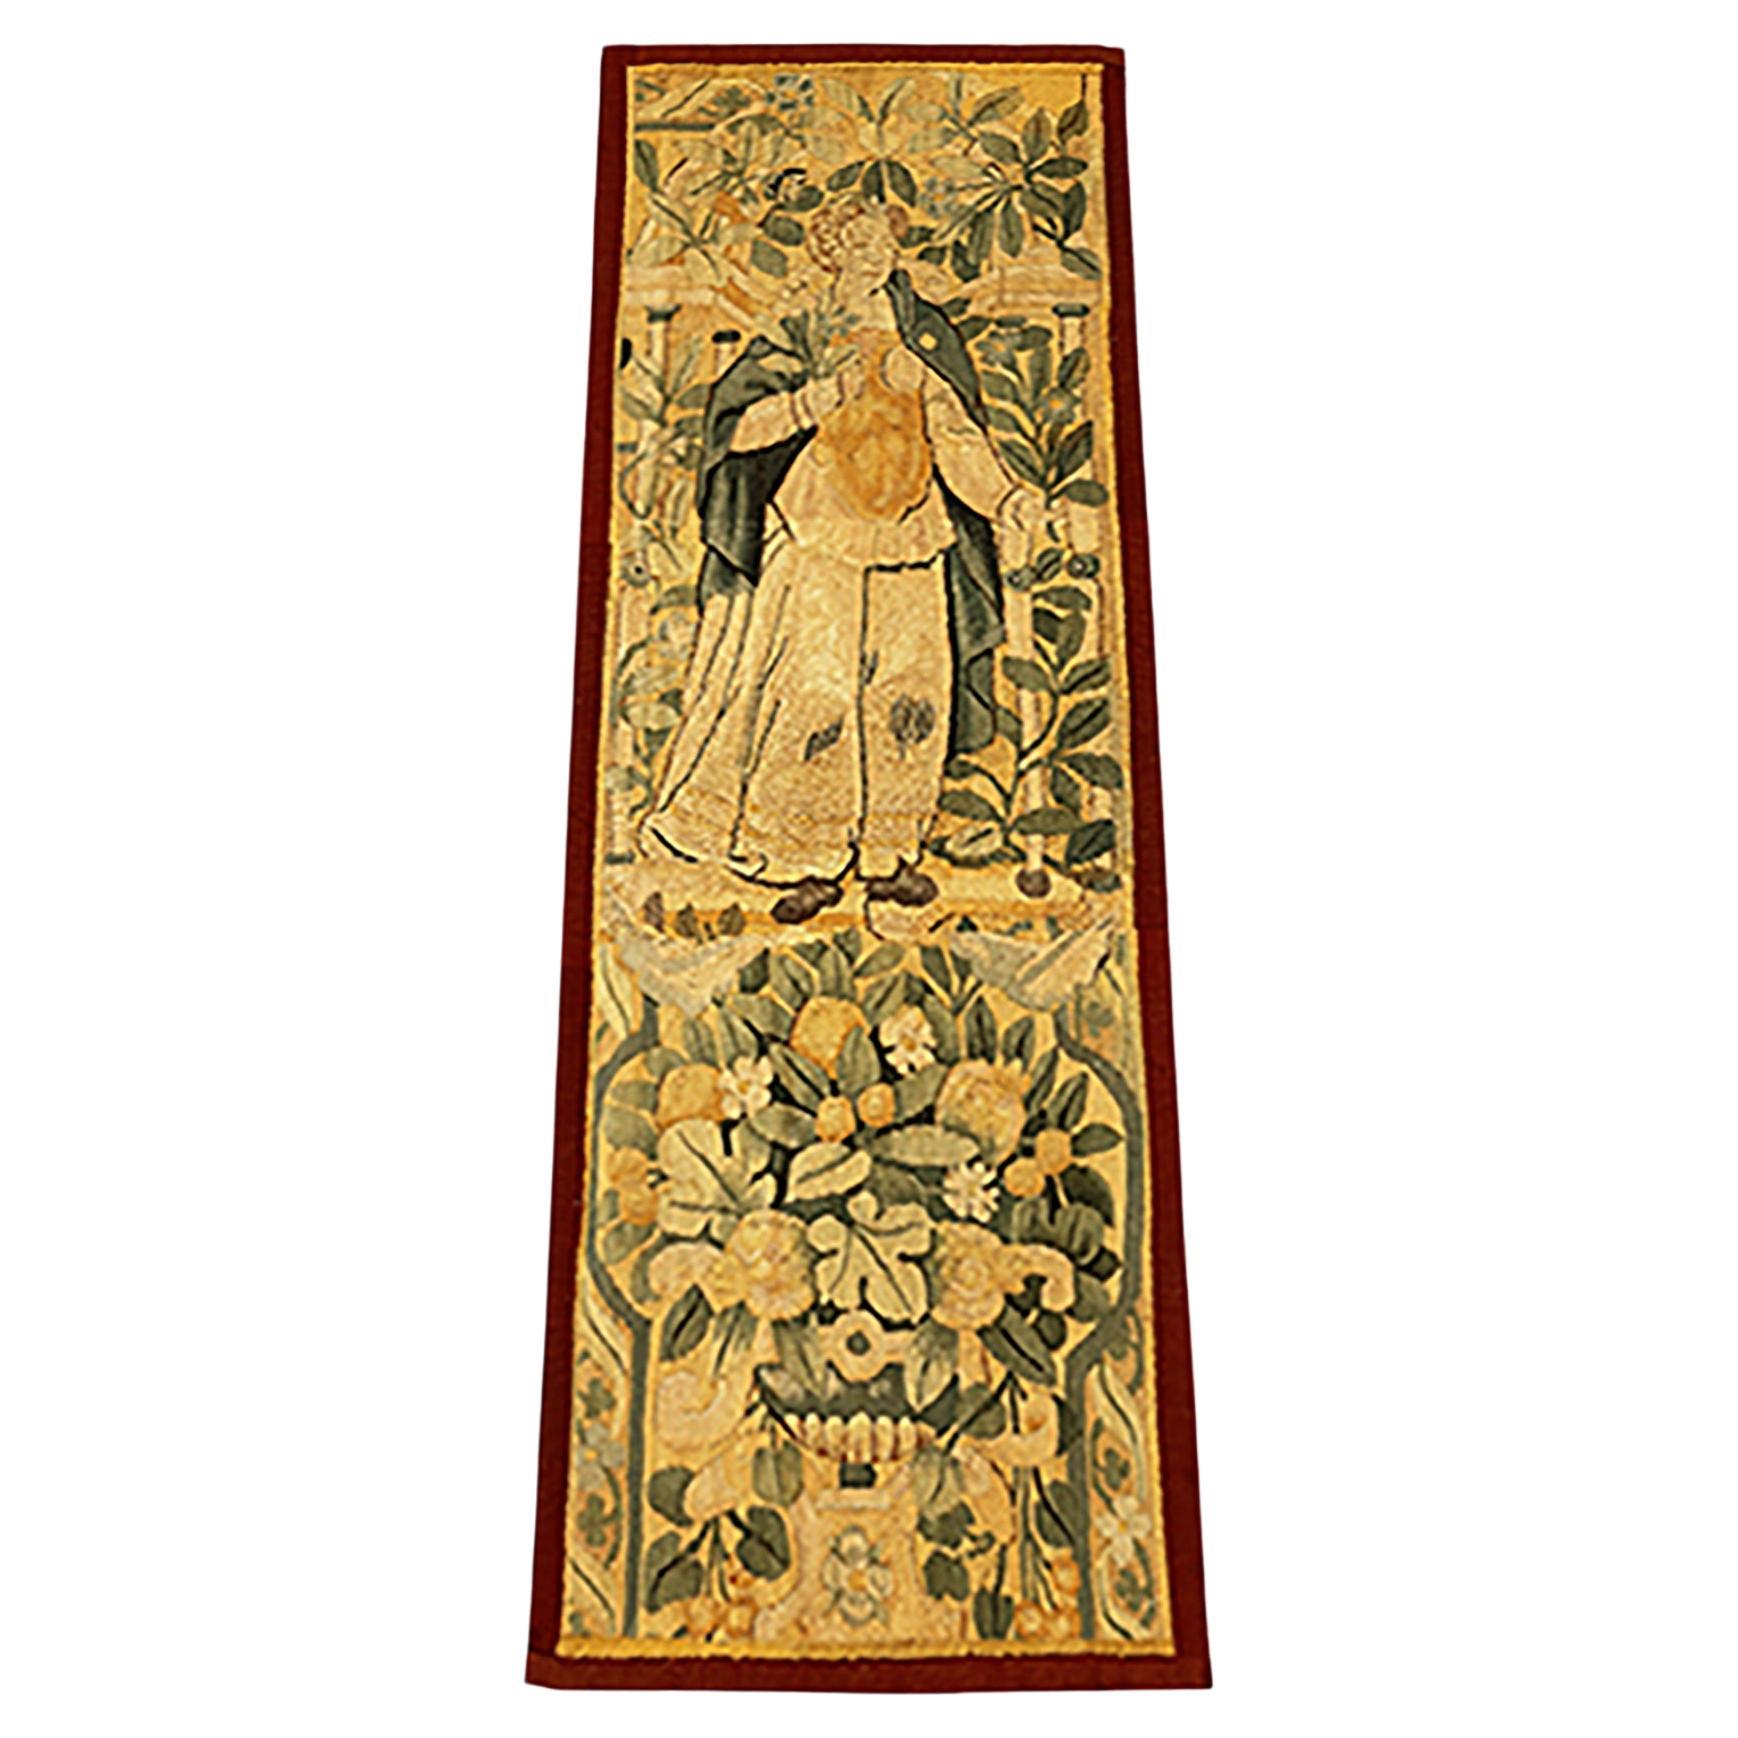 Historischer flämischer Wandteppich des 17. Jahrhunderts mit weiblicher Figur, vertikal ausgerichtet